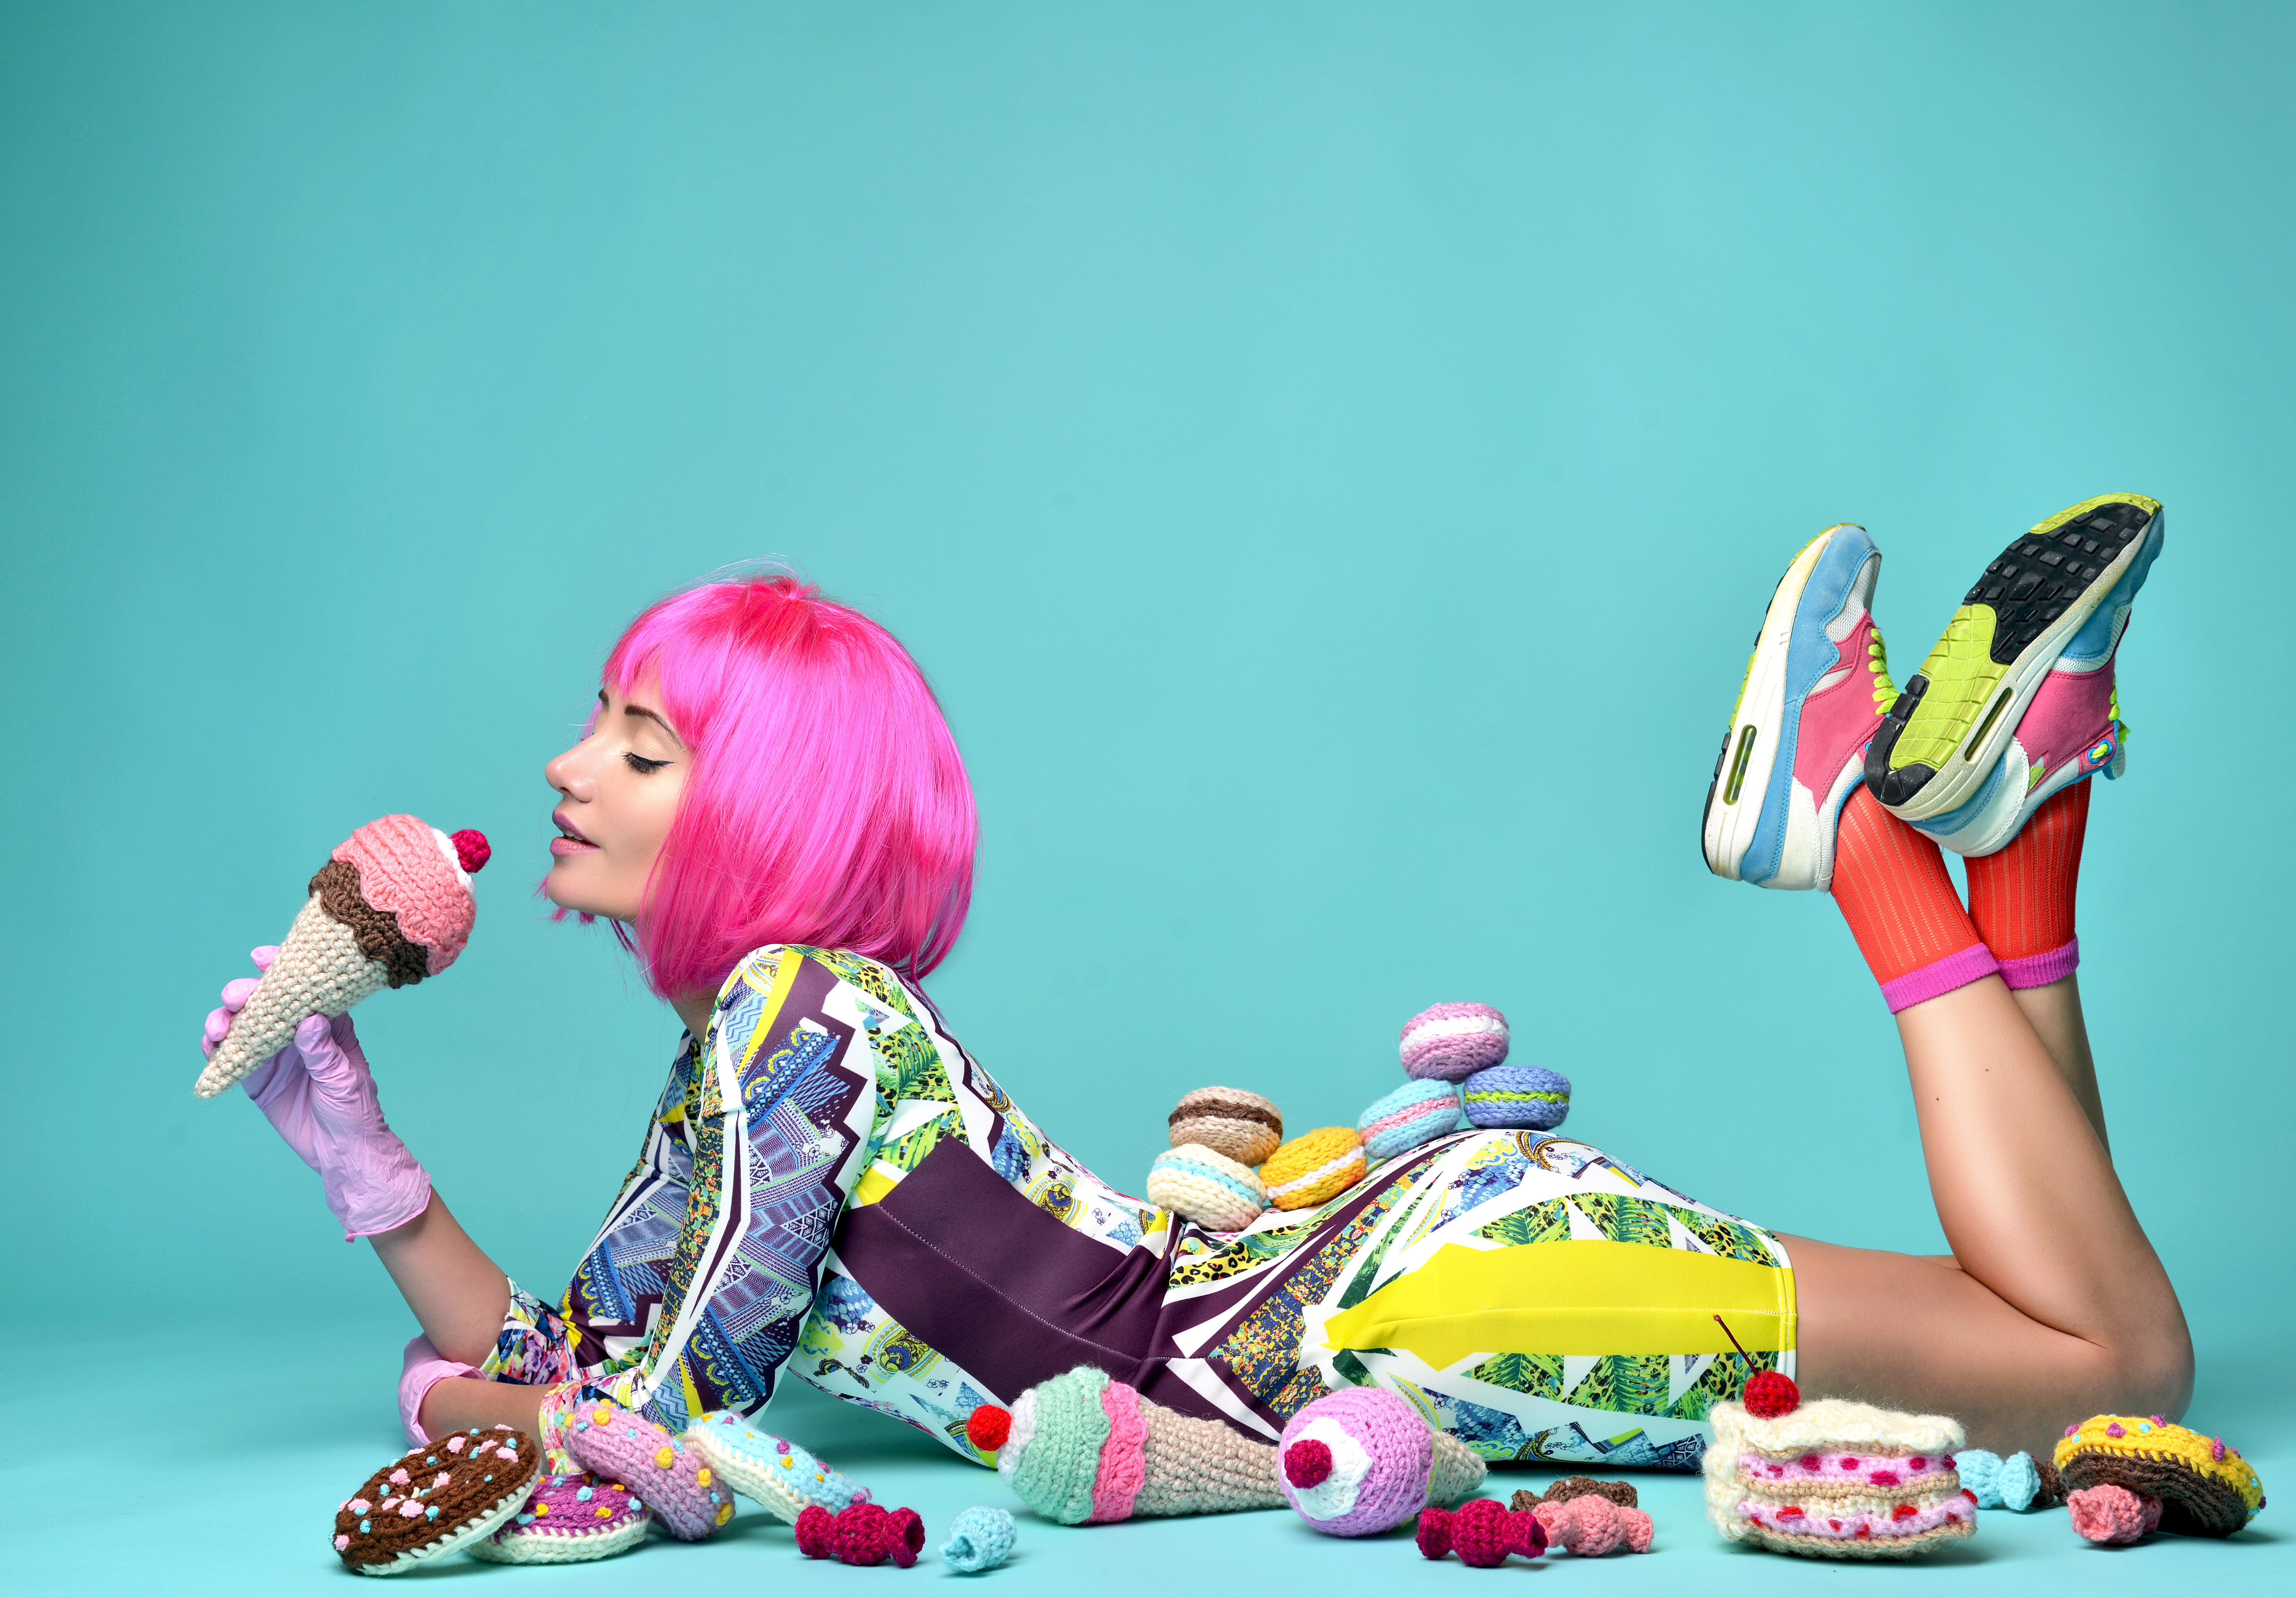 Картинка: Девушка, лежит, стиль, продукты, вязаное, мороженое, пироженки, бублики, фон